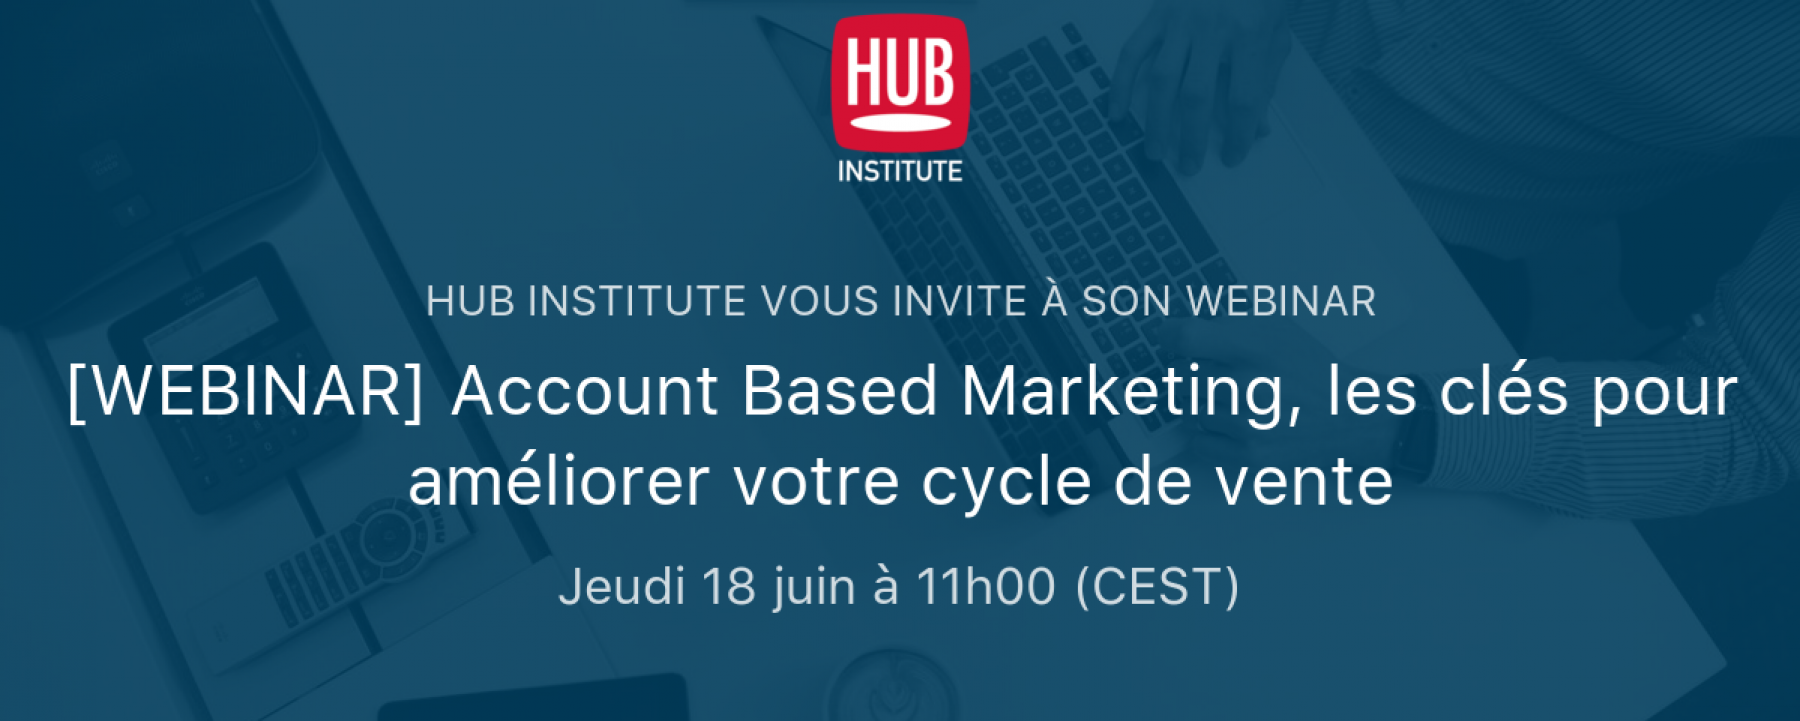 Webinar Account Based Marketing, les clés pour améliorer votre cycle de vente, le 18 juin 2020, organisé par le Hub Institute 